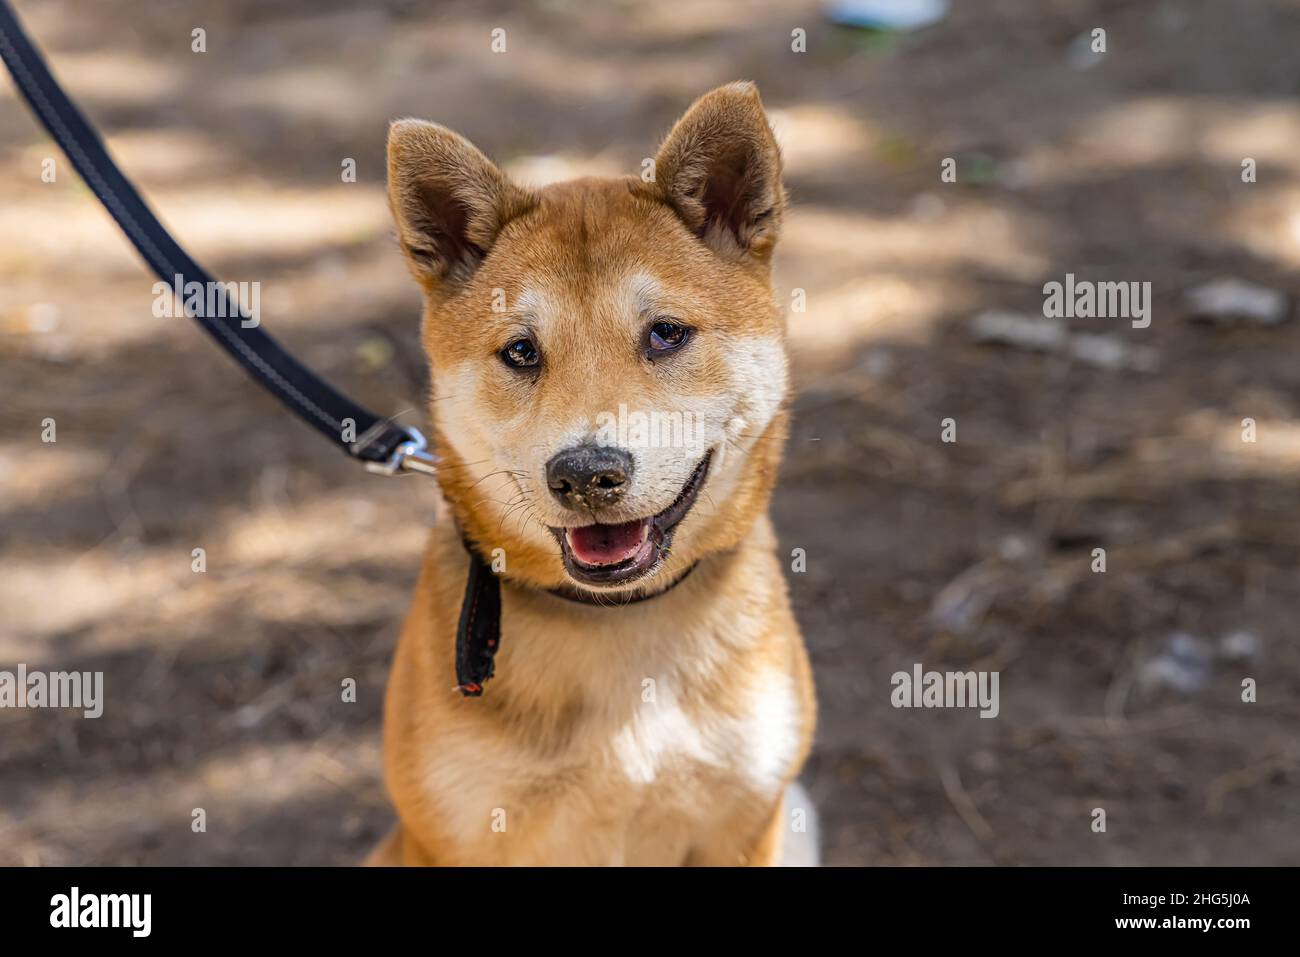 Nahaufnahme eines neugierigen roten Shiba Inu-Hundes, der an einem sonnigen Tag draußen sitzt. Japanische Spitz Rasse von Hund für ihre Urajiro Markierungen bekannt. Stockfoto